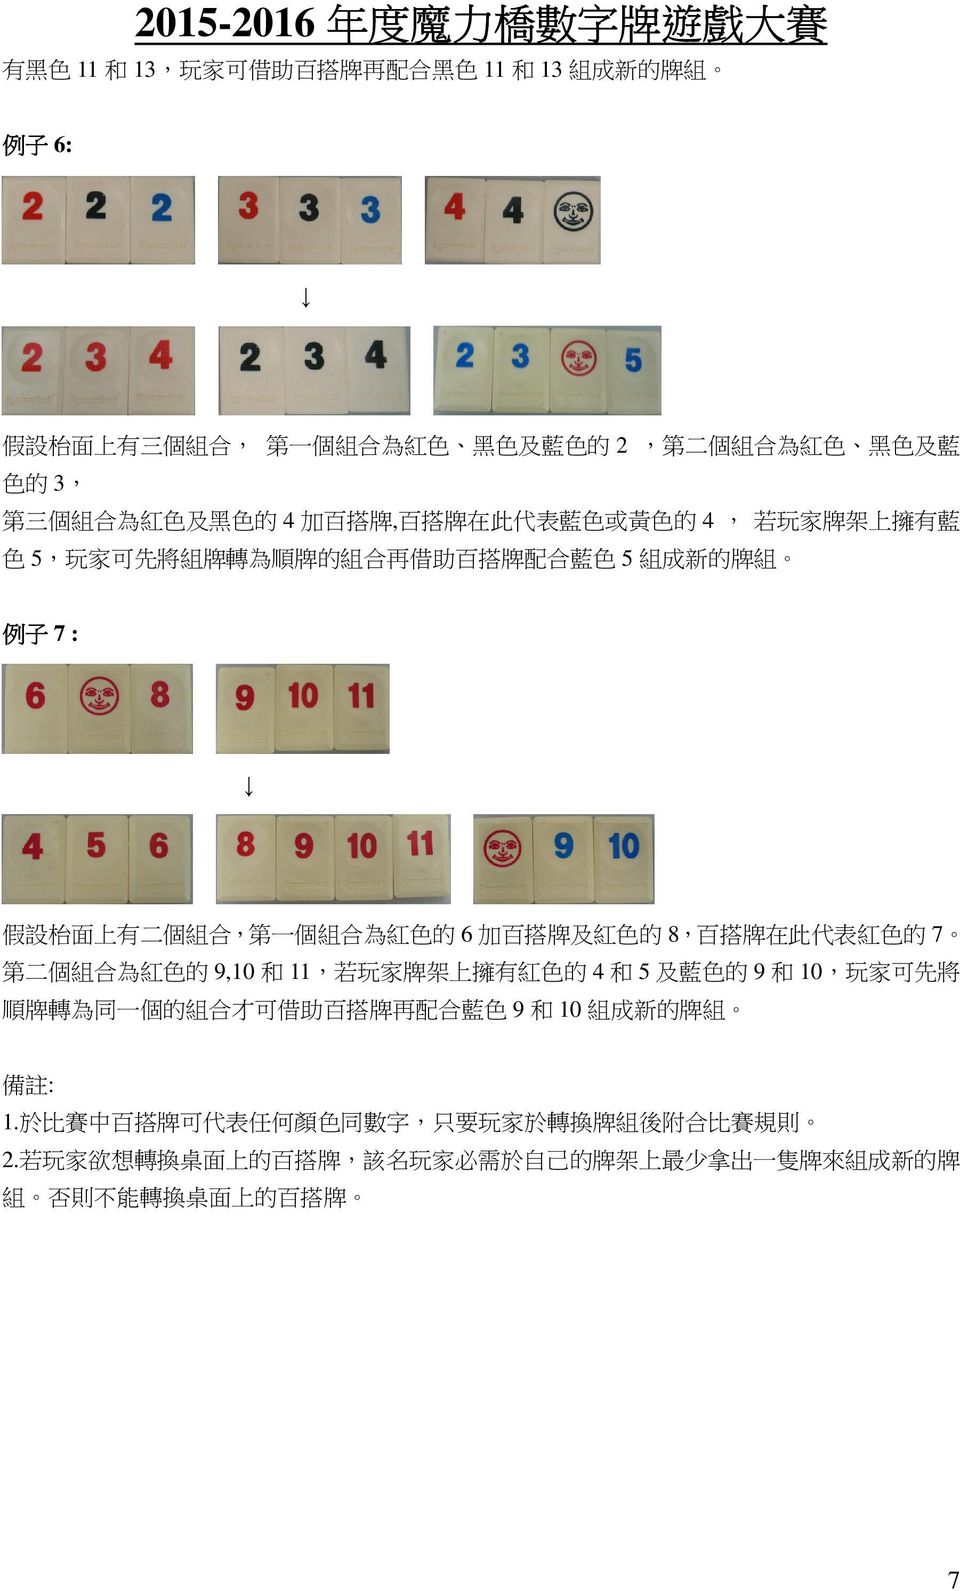 的 8, 百 搭 牌 在 此 代 表 紅 色 的 7 第 二 個 組 合 為 紅 色 的 9,10 和 11, 若 玩 家 牌 架 上 擁 有 紅 色 的 4 和 5 及 藍 色 的 9 和 10, 玩 家 可 先 將 順 牌 轉 為 同 一 個 的 組 合 才 可 借 助 百 搭 牌 再 配 合 藍 色 9 和 10 組 成 新 的 牌 組 備 註 : 1.